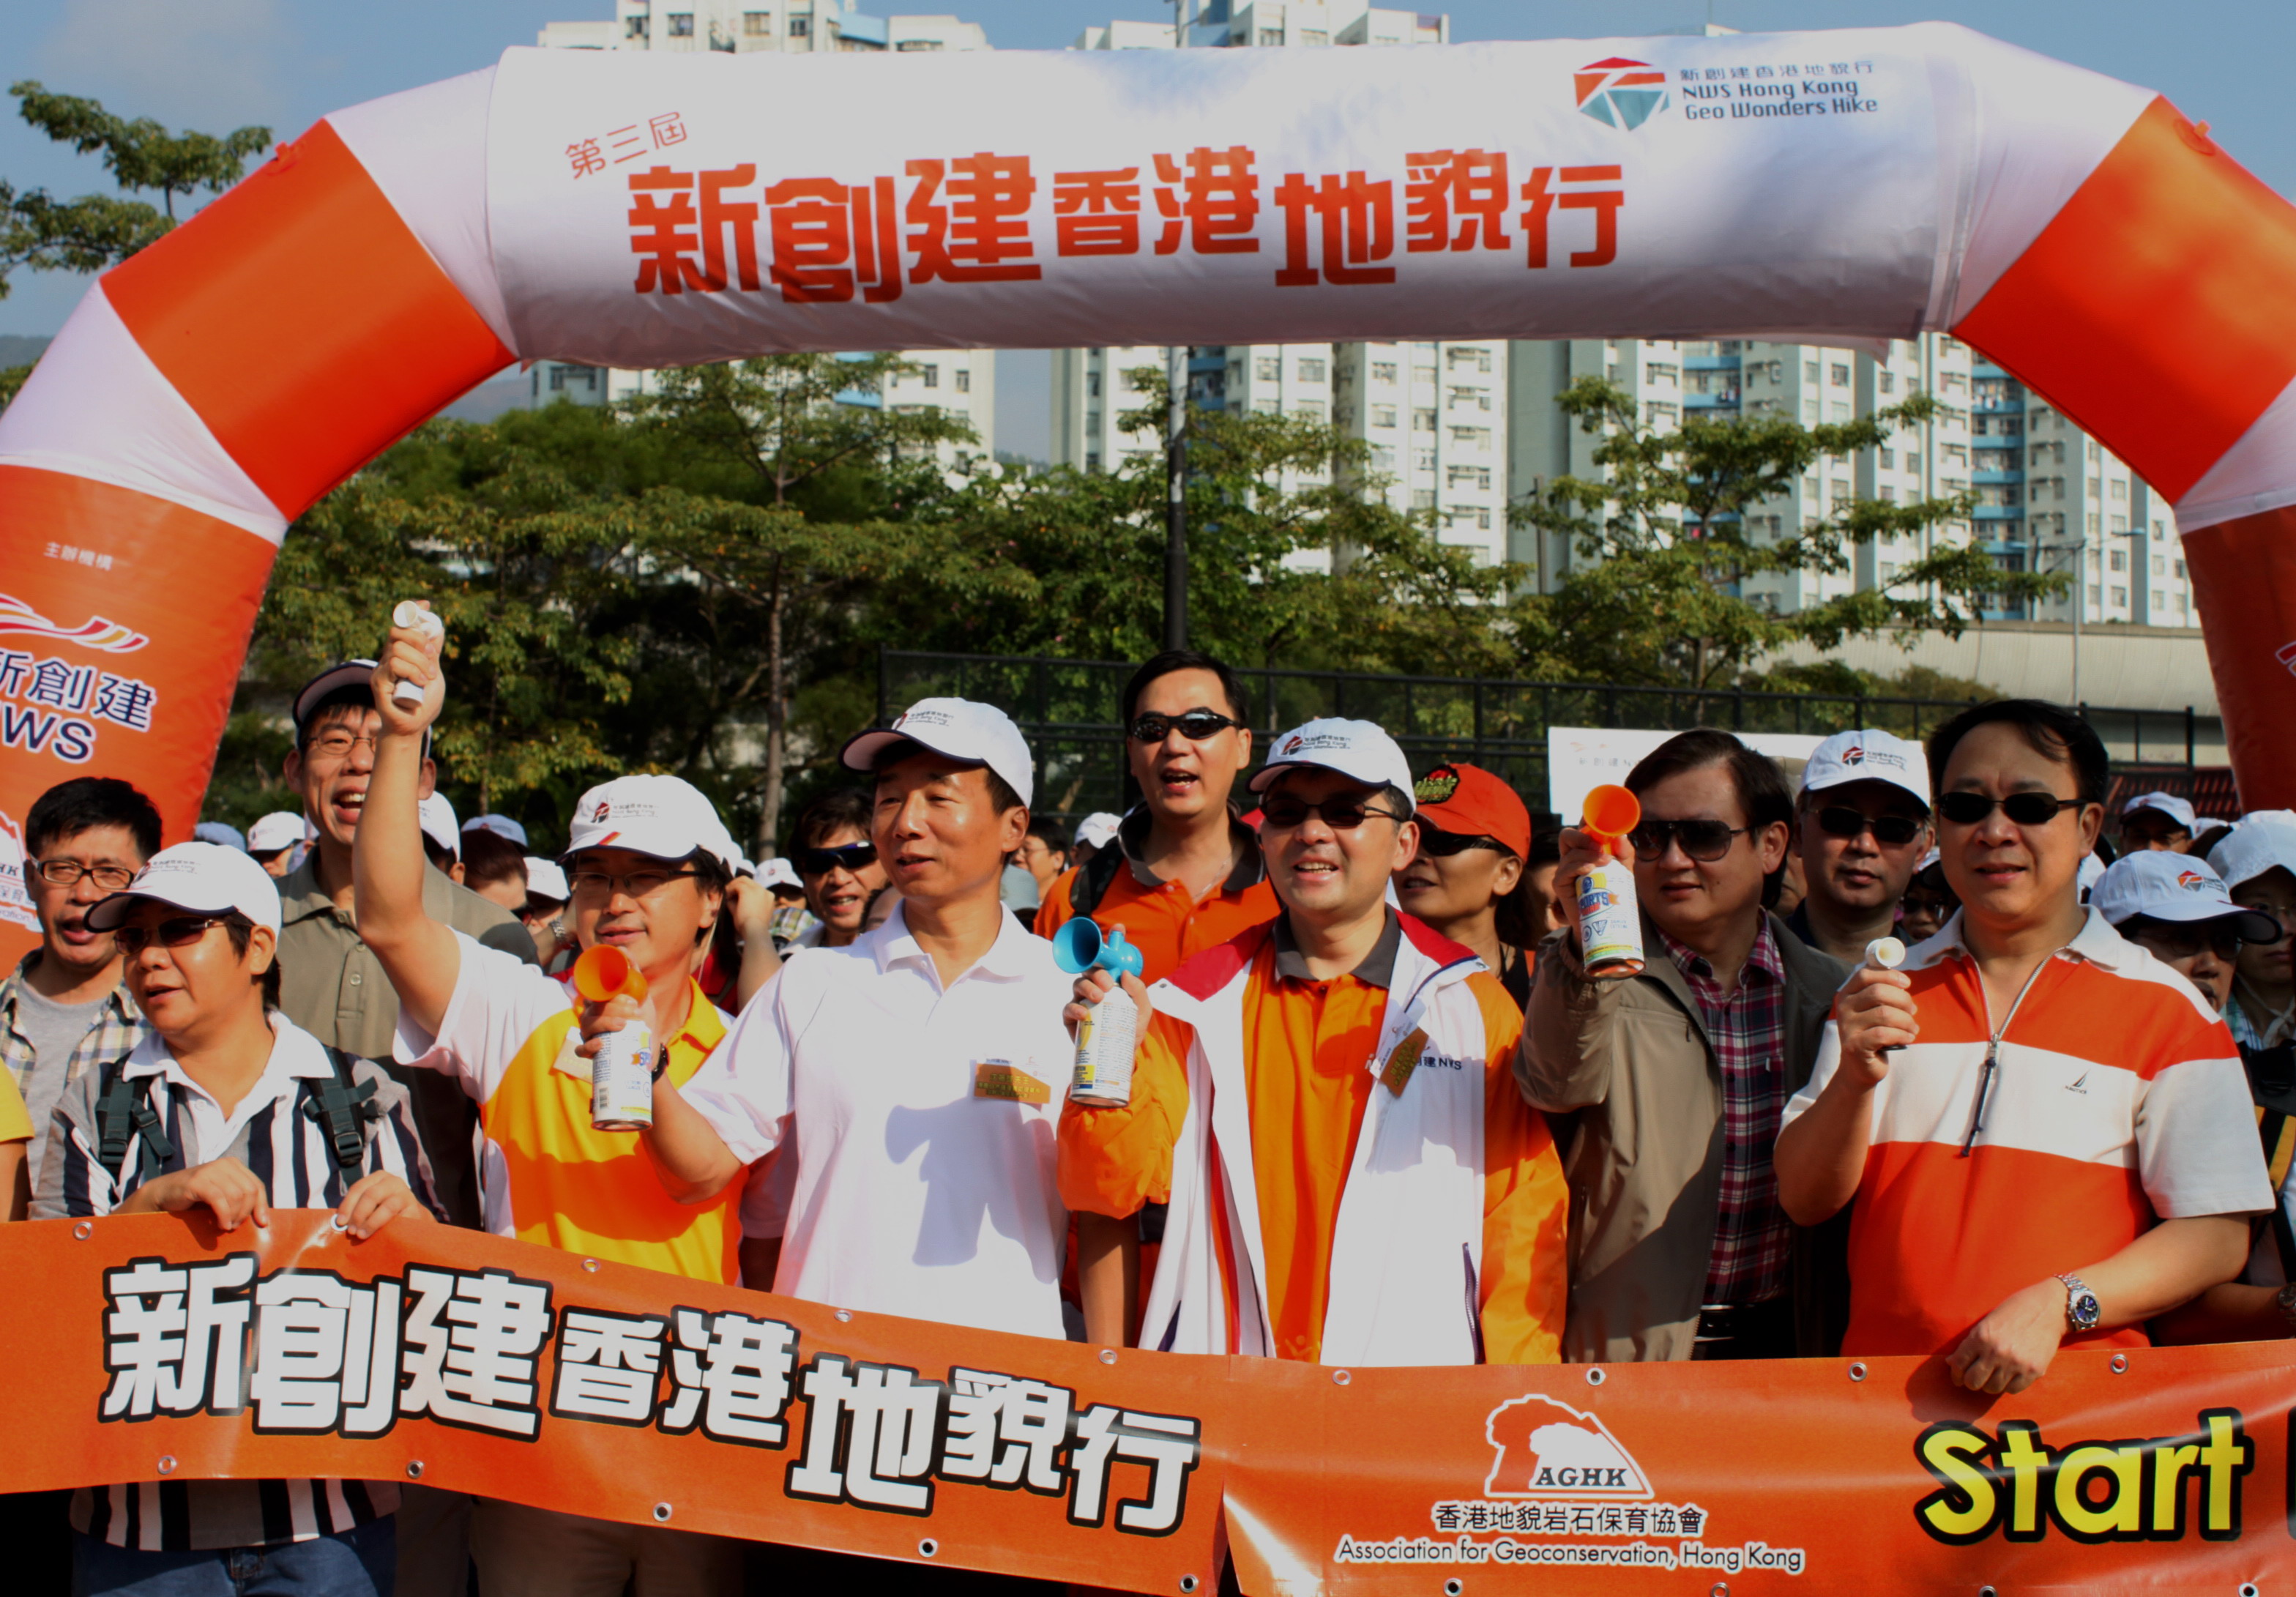 「新創建香港地貌行2010-11」連串活動展開